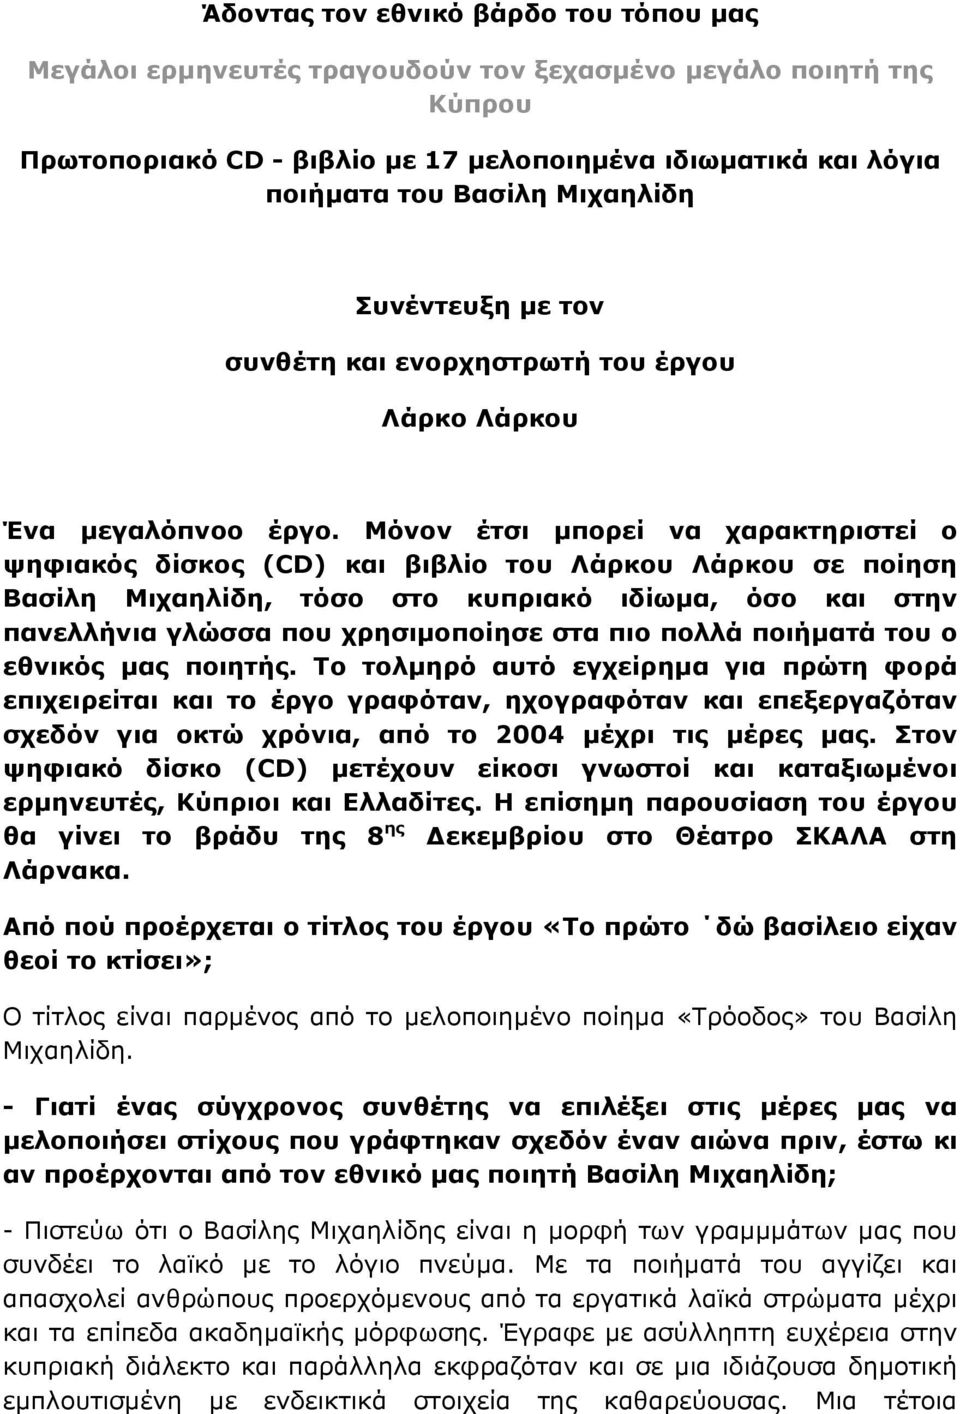 Μόνον έτσι μπορεί να χαρακτηριστεί ο ψηφιακός δίσκος (CD) και βιβλίο του Λάρκου Λάρκου σε ποίηση Βασίλη Μιχαηλίδη, τόσο στο κυπριακό ιδίωμα, όσο και στην πανελλήνια γλώσσα που χρησιμοποίησε στα πιο